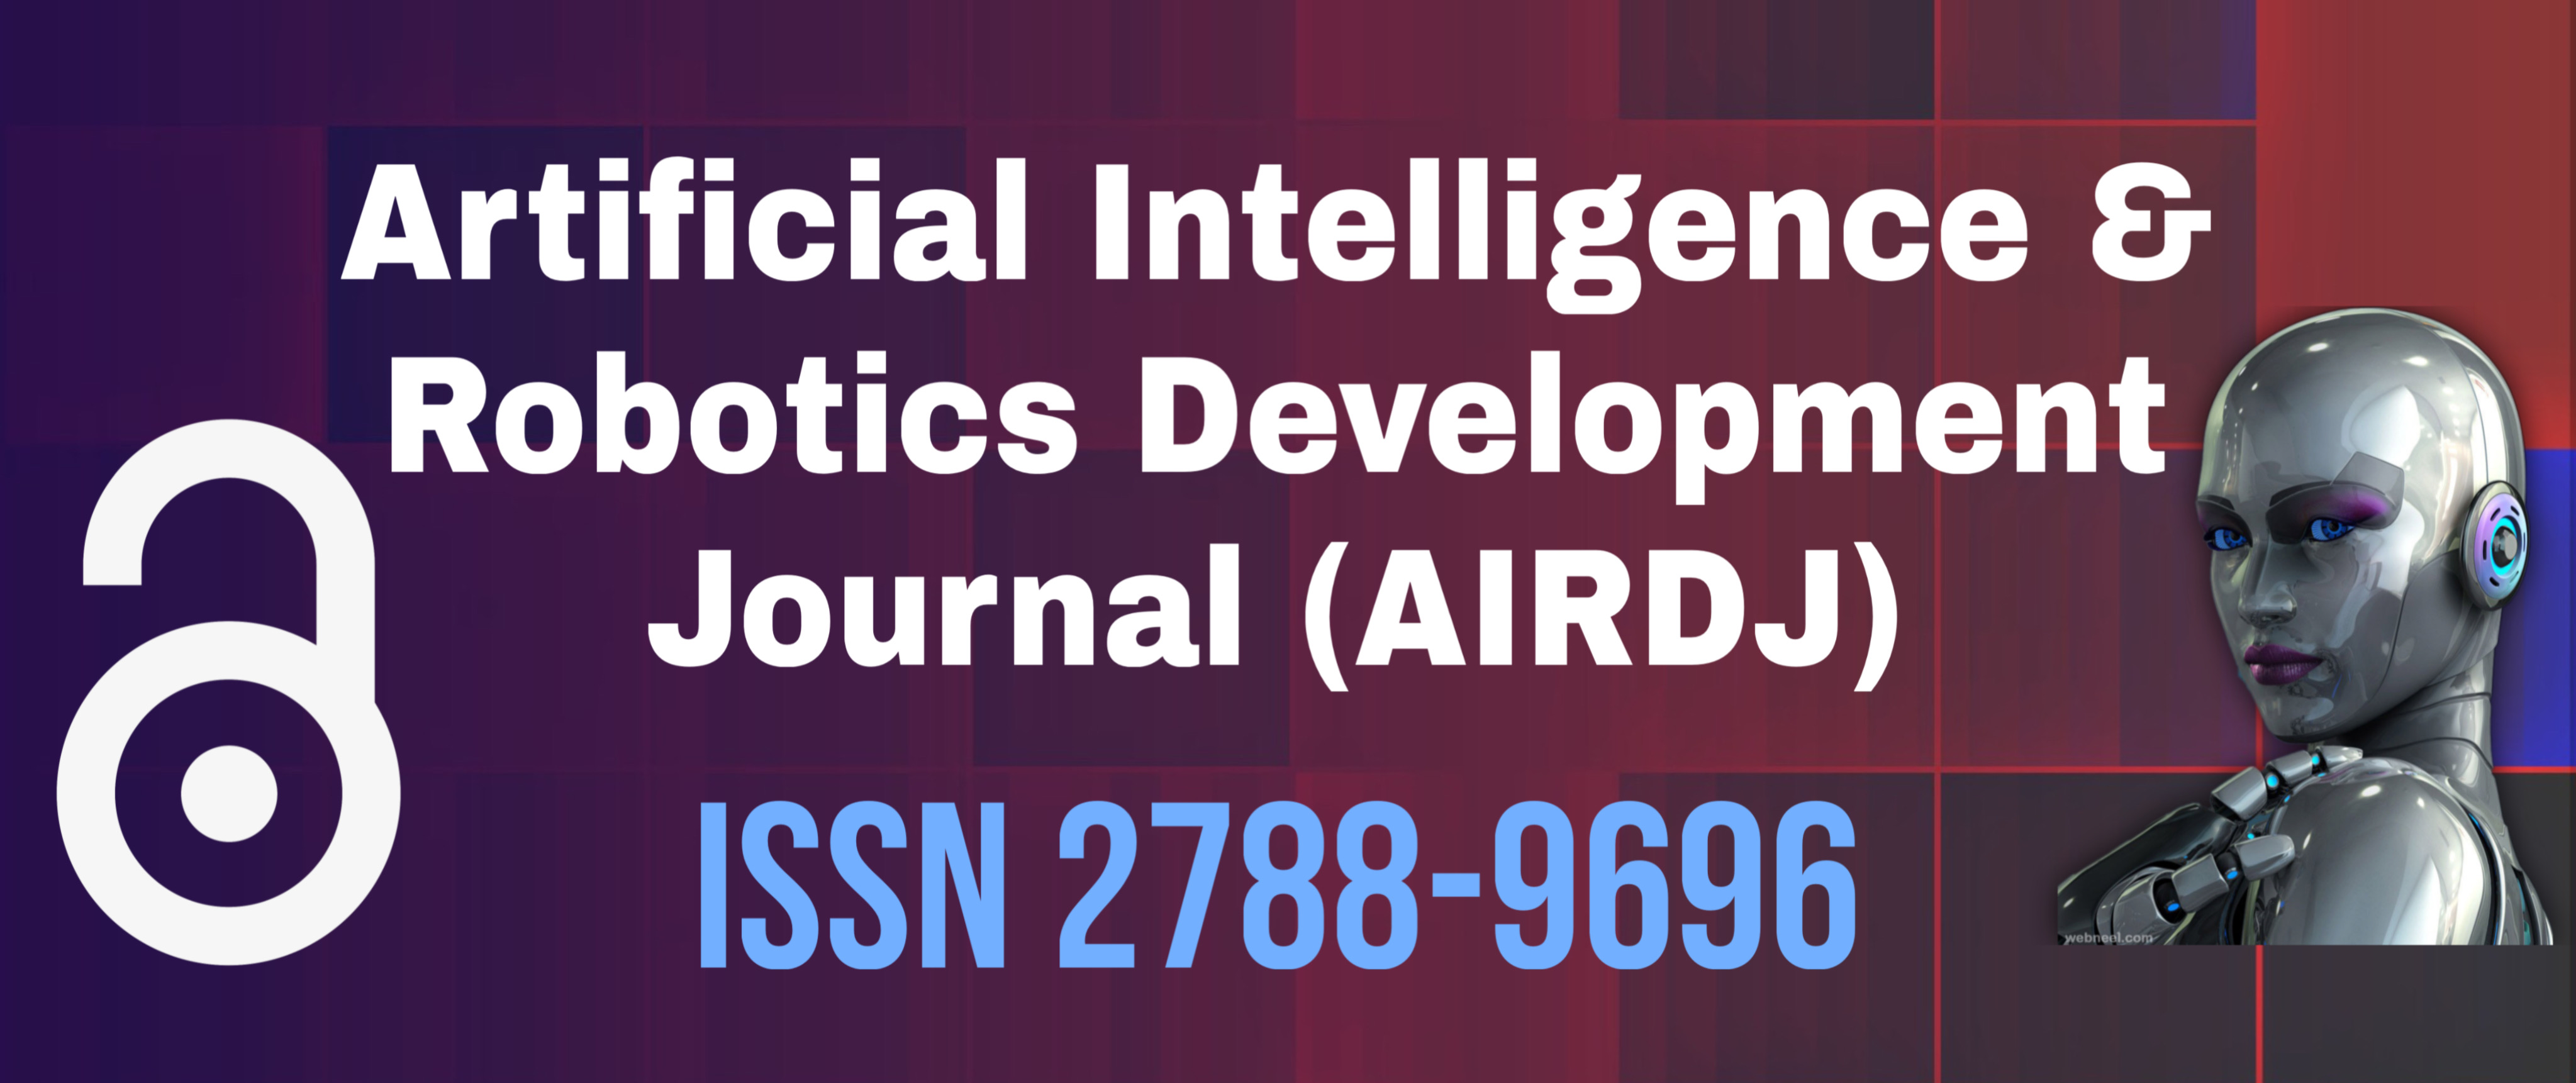 Artificial Intelligence & Robotics Development journal (AIRDJ)